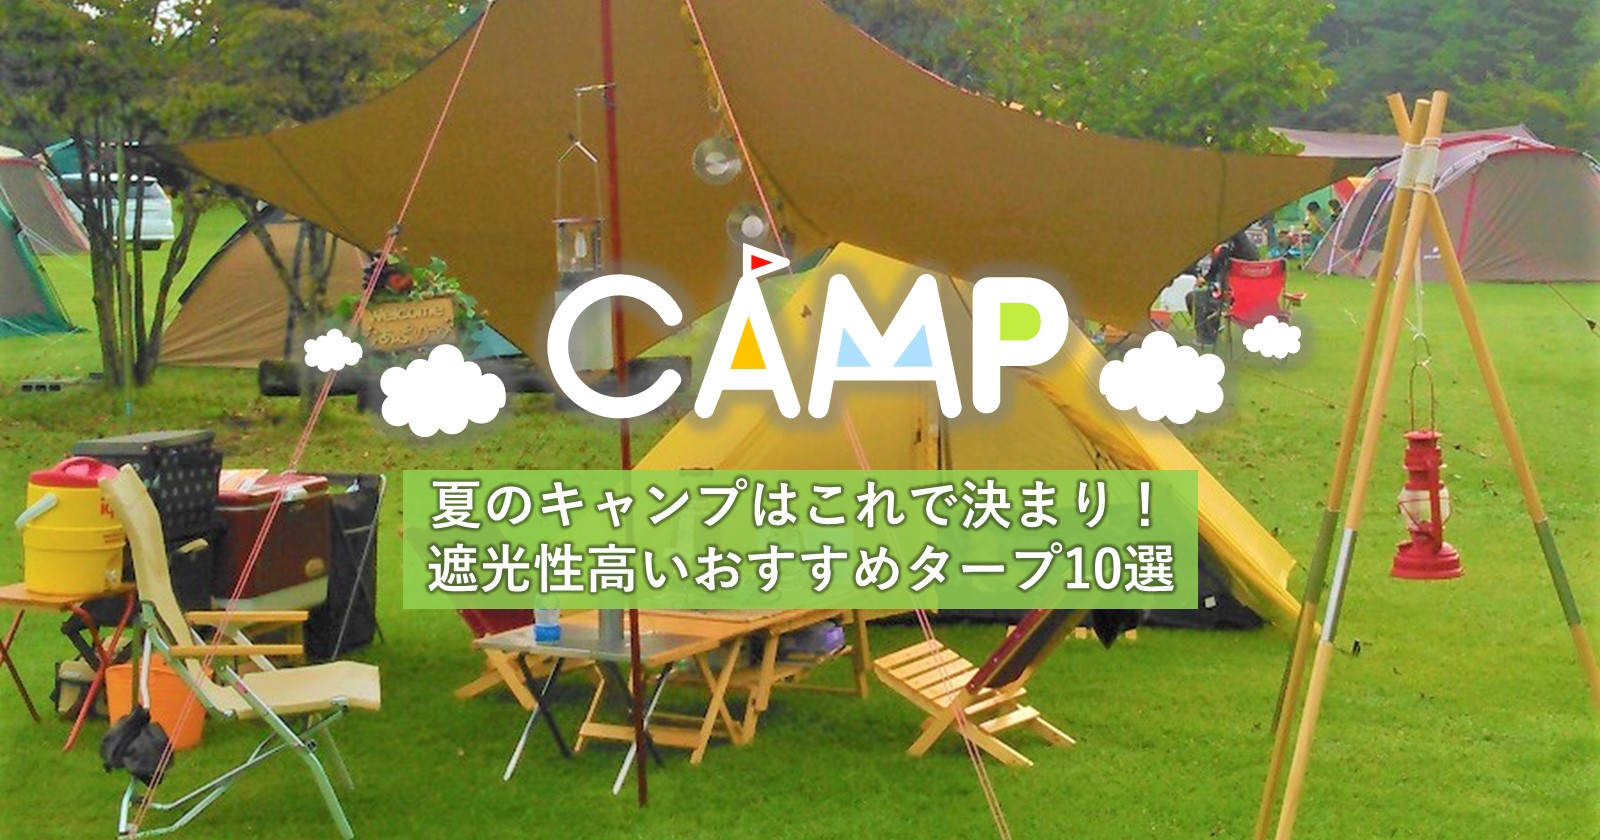 夏のキャンプはこれで決まり 遮光性が高いおすすめタープ10選 キャンプ アウトドアのtakibi タキビ